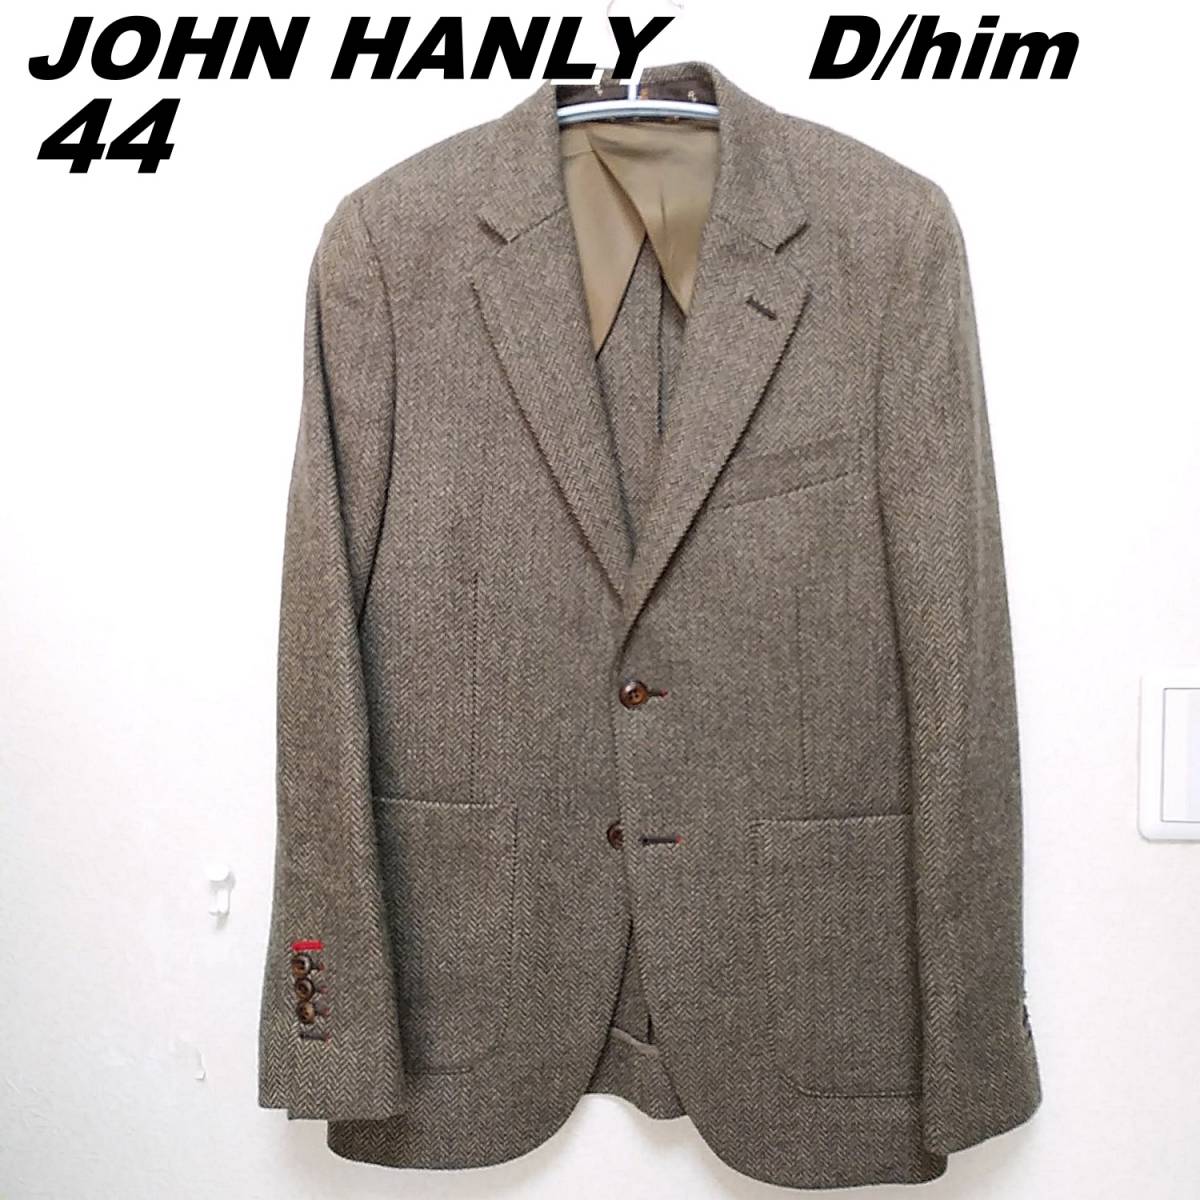 D/him　JOHN HANLY ツイード　テーラードジャケット　中厚手　メンズ44　茶　ダブルスタンダードクロージング　230205-01